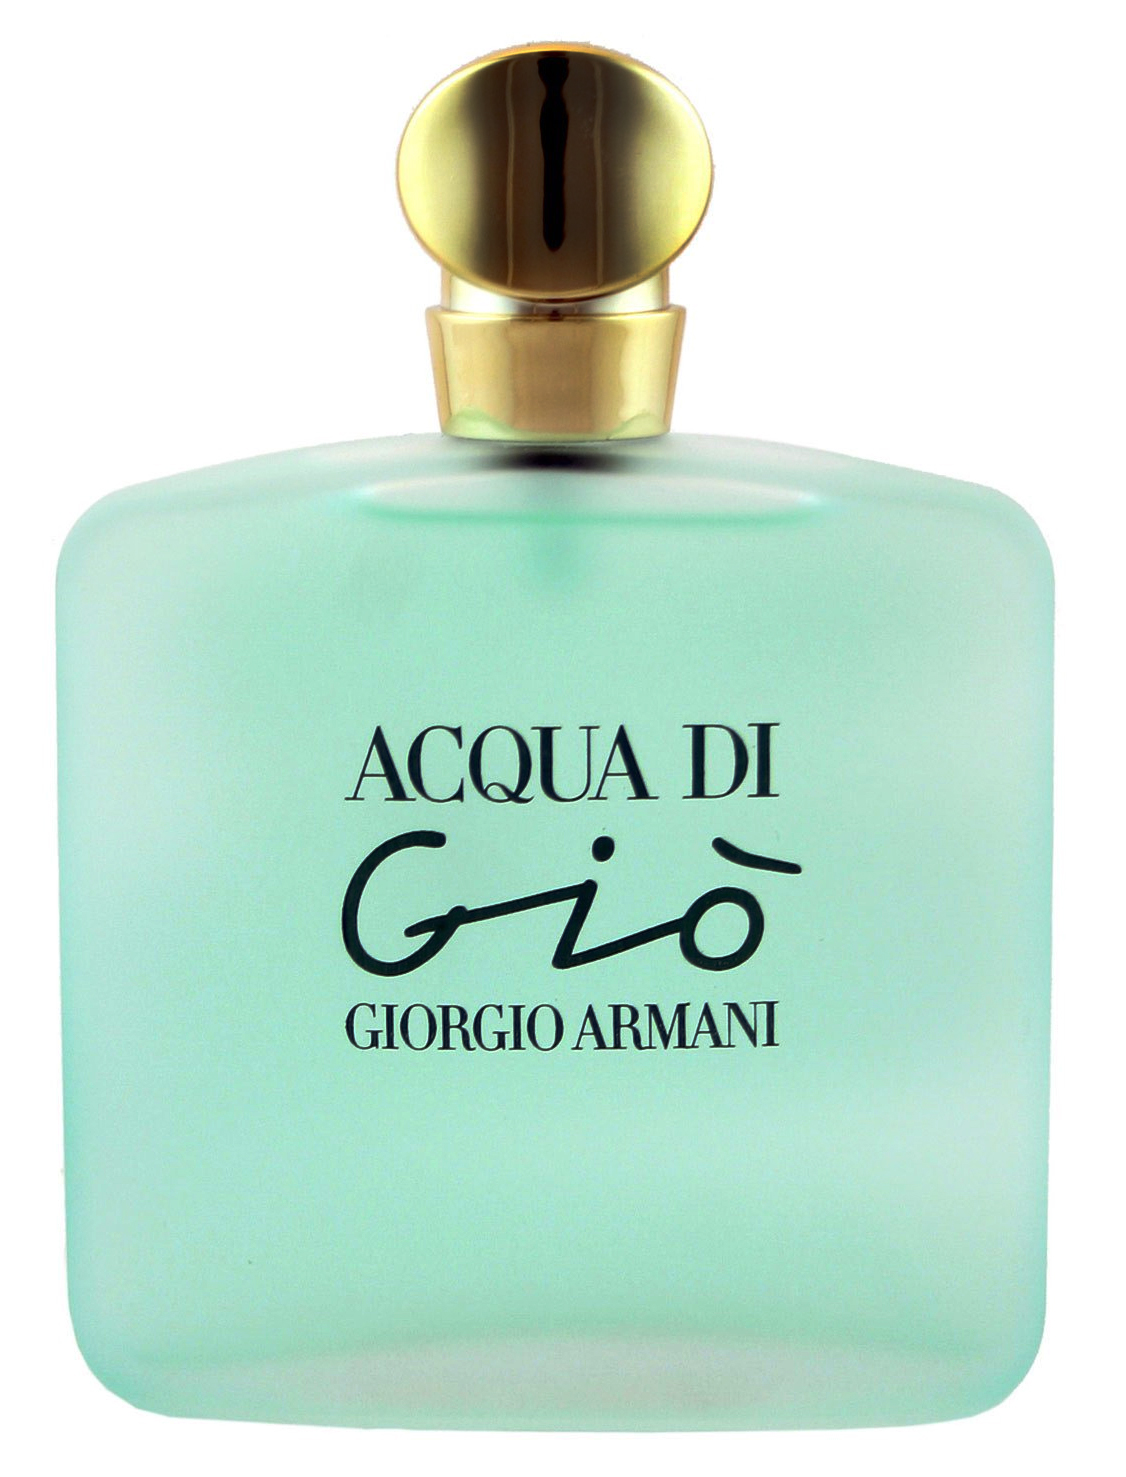 Acqua di Gio Giorgio Armani perfume - a fragrance for women 1995